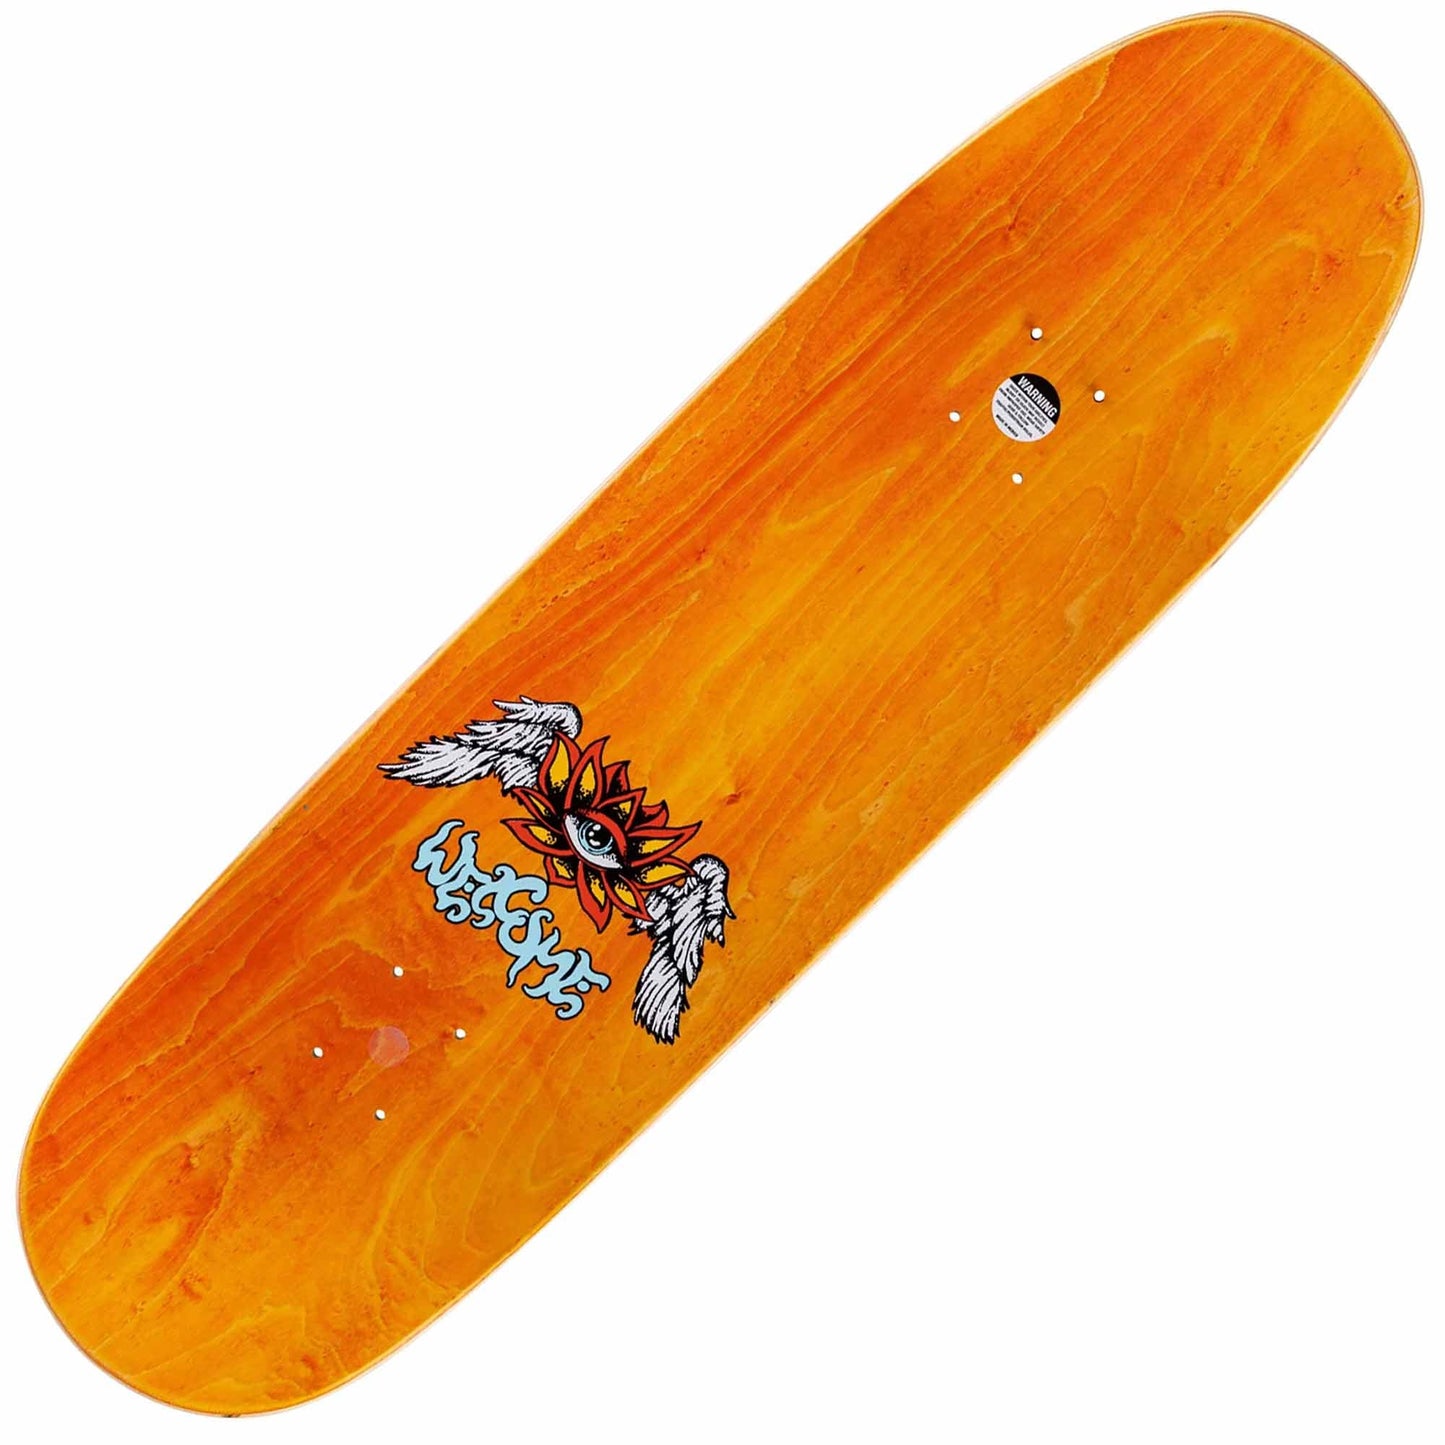 Welcome Ryan Reyes Baculus 2 Deck (9.0") - Tiki Room Skateboards - 2